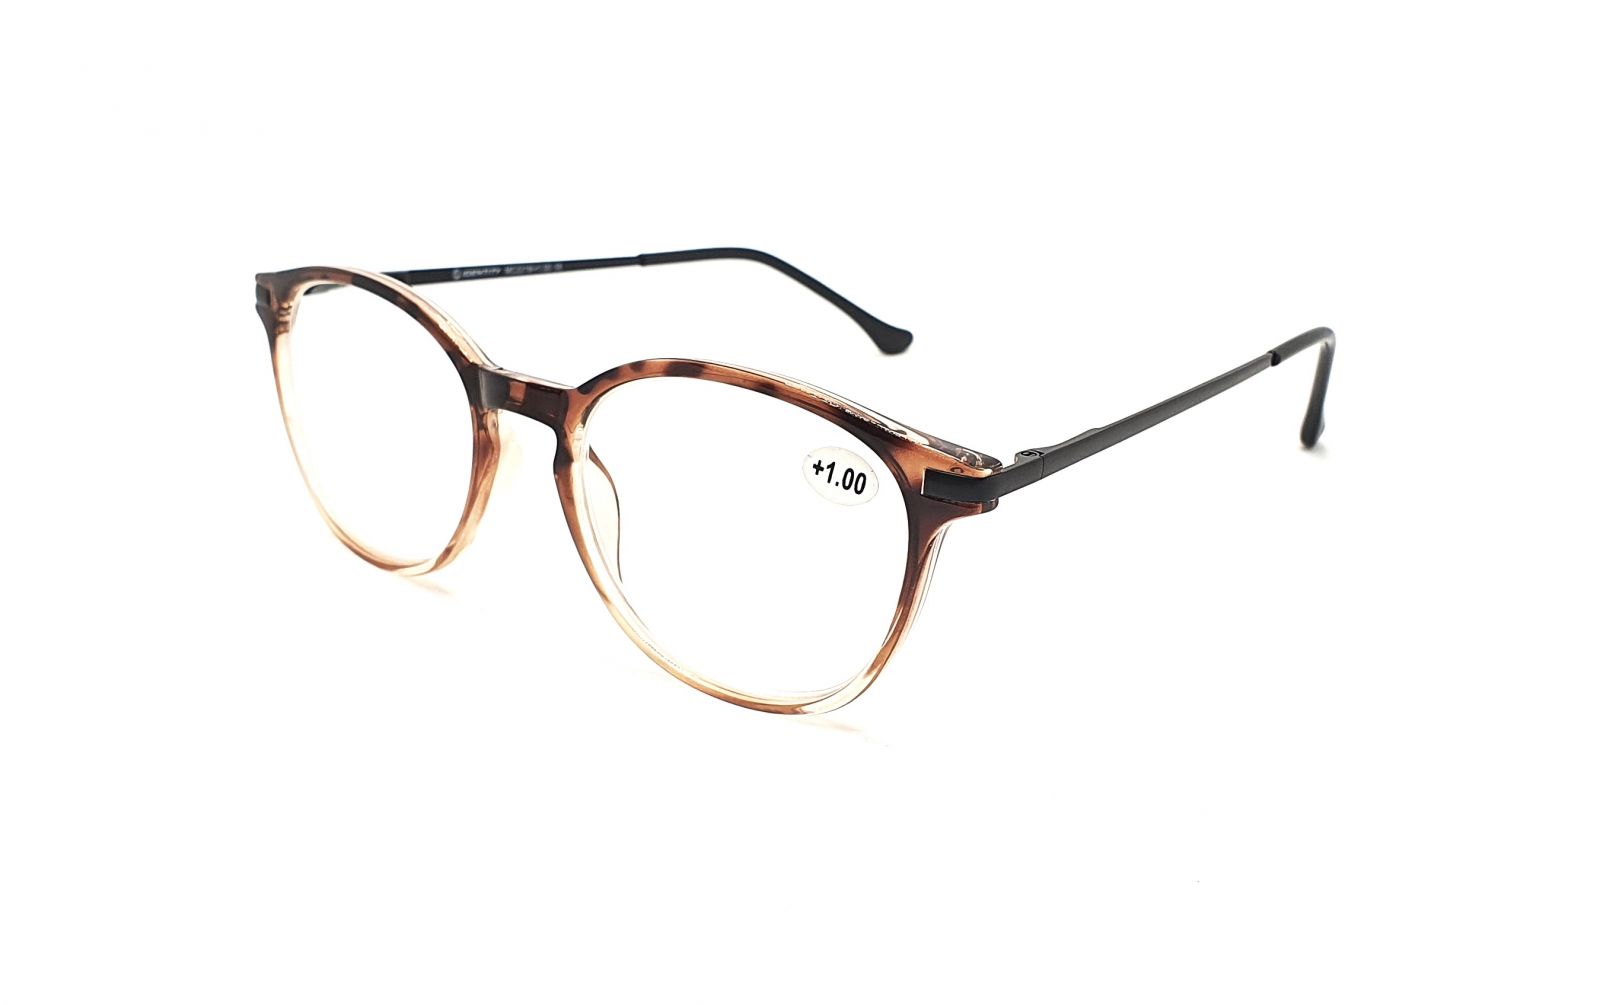 IDENTITY Dioptrické brýle MC2219 +2,50 flex brown